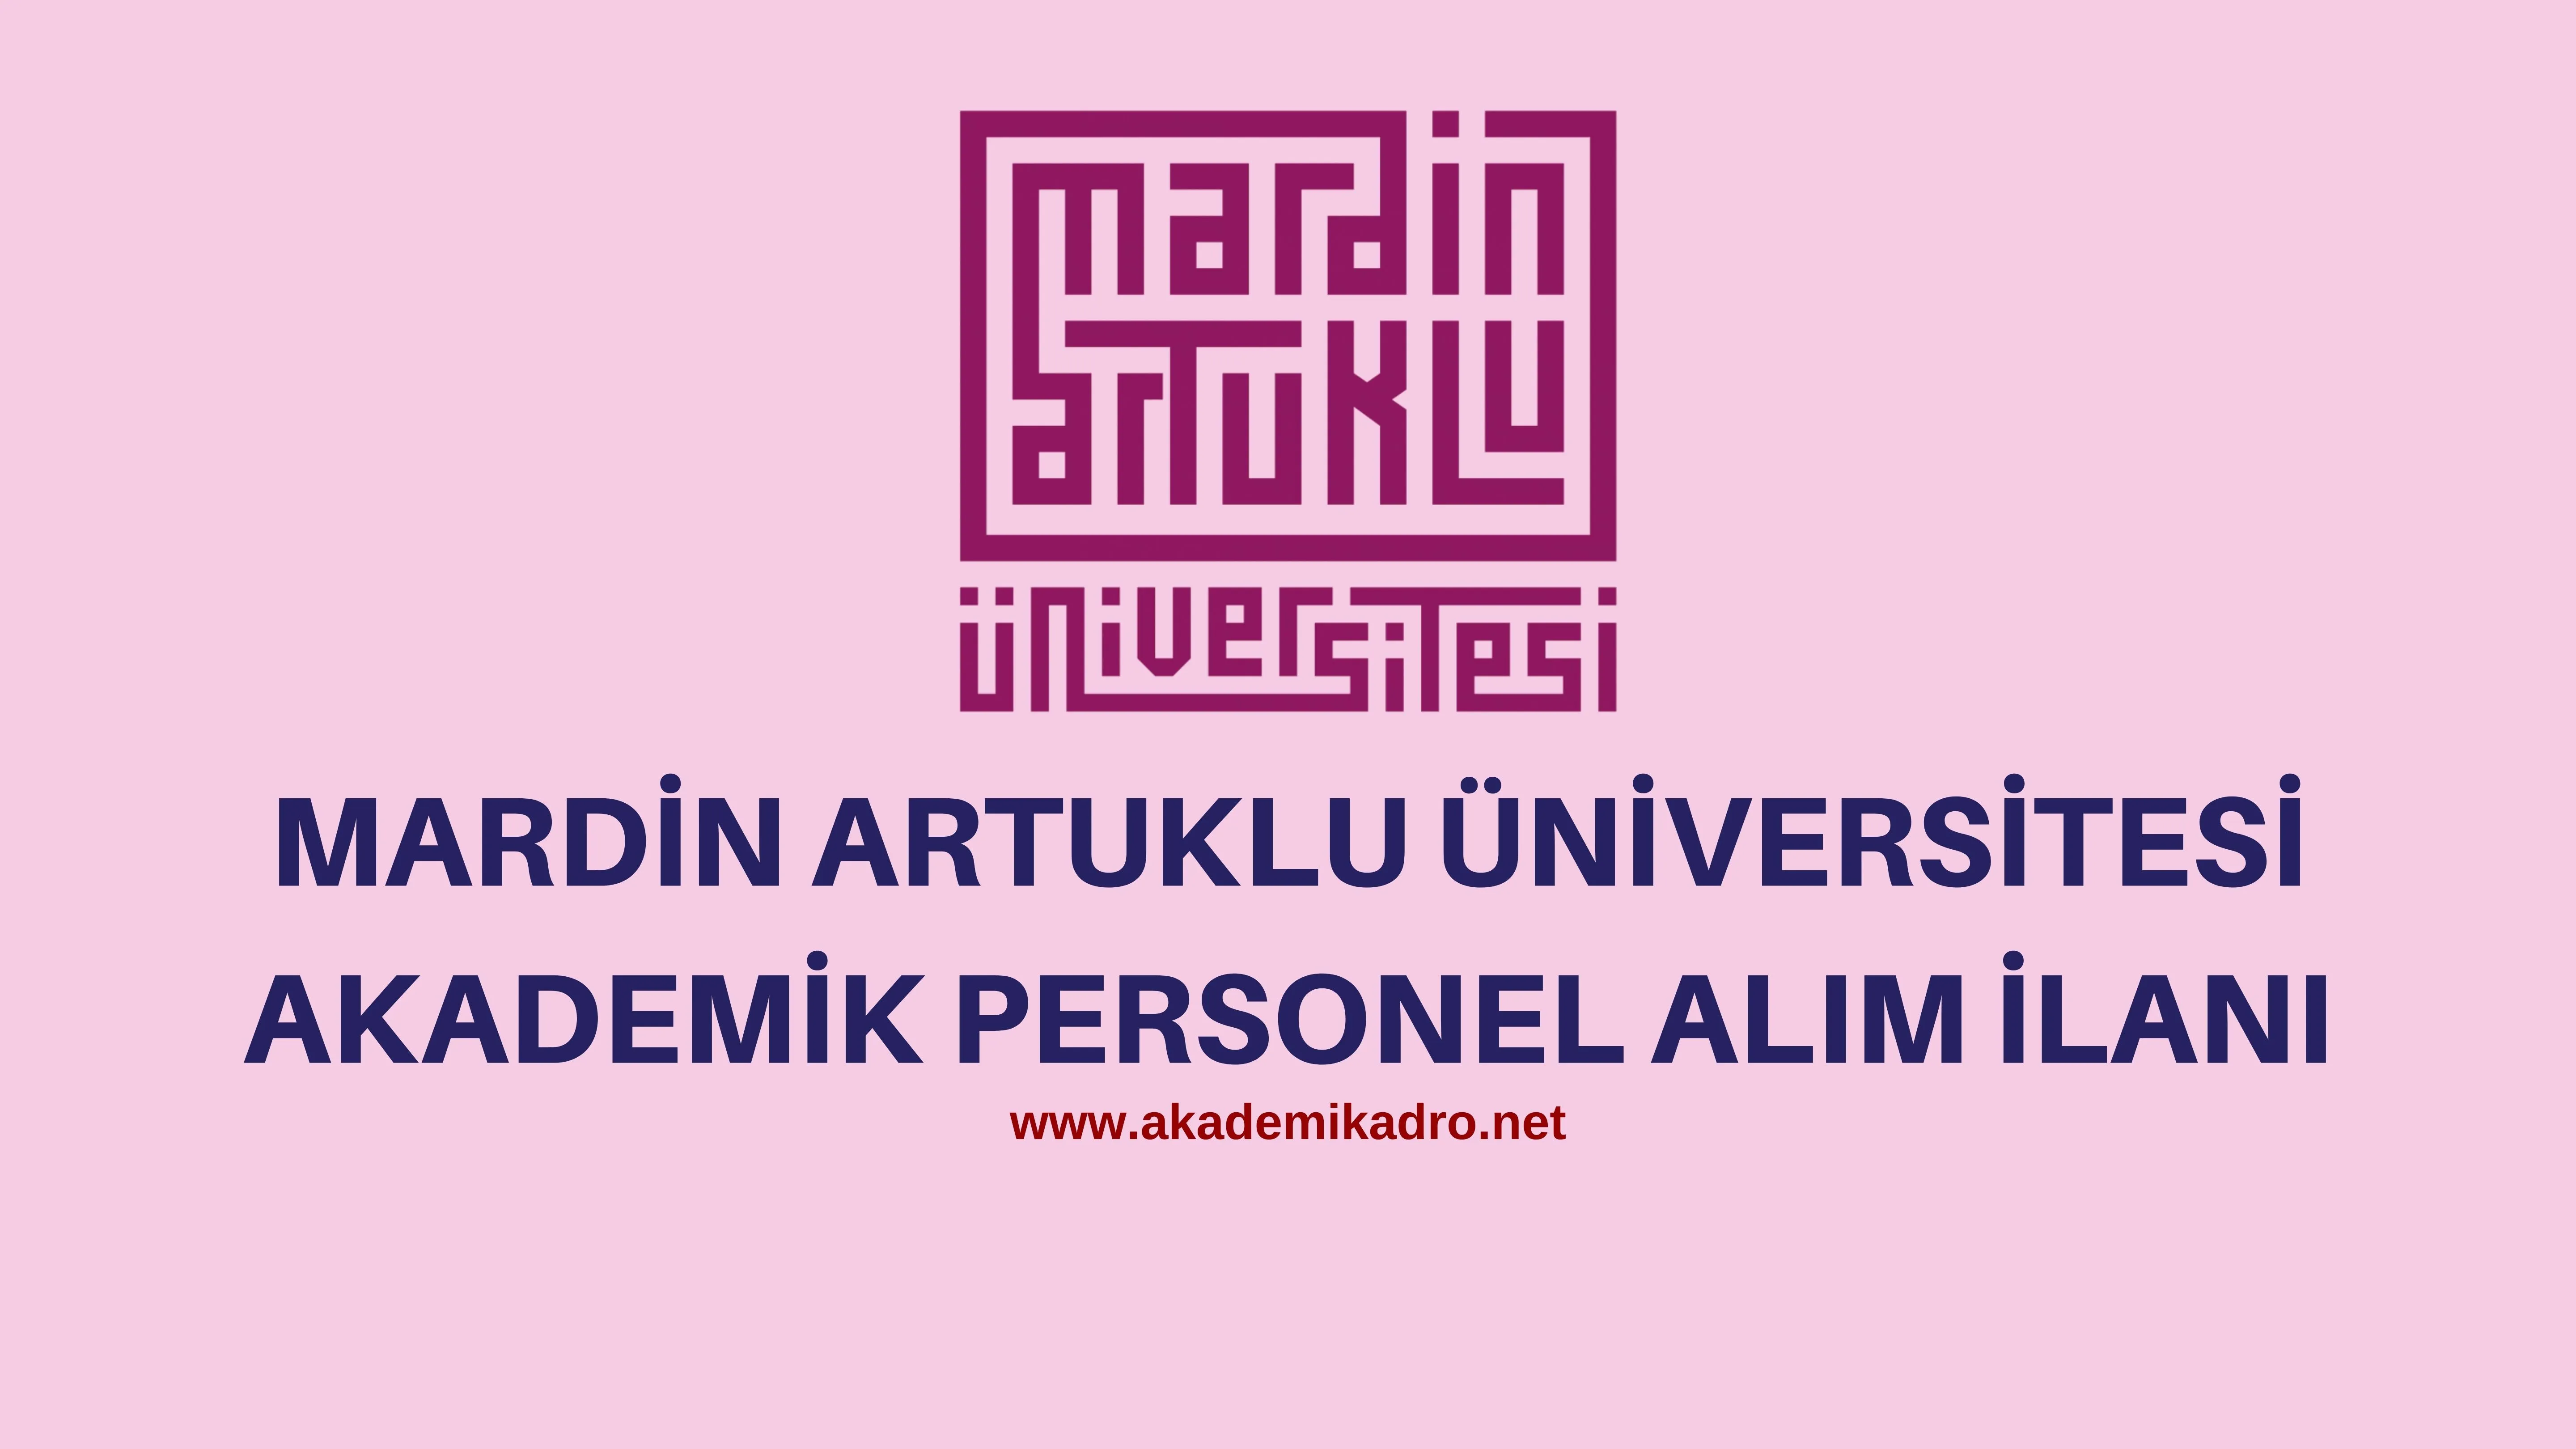 Mardin Artuklu Üniversitesi birçok alandan 11 Akademik personel alacak.